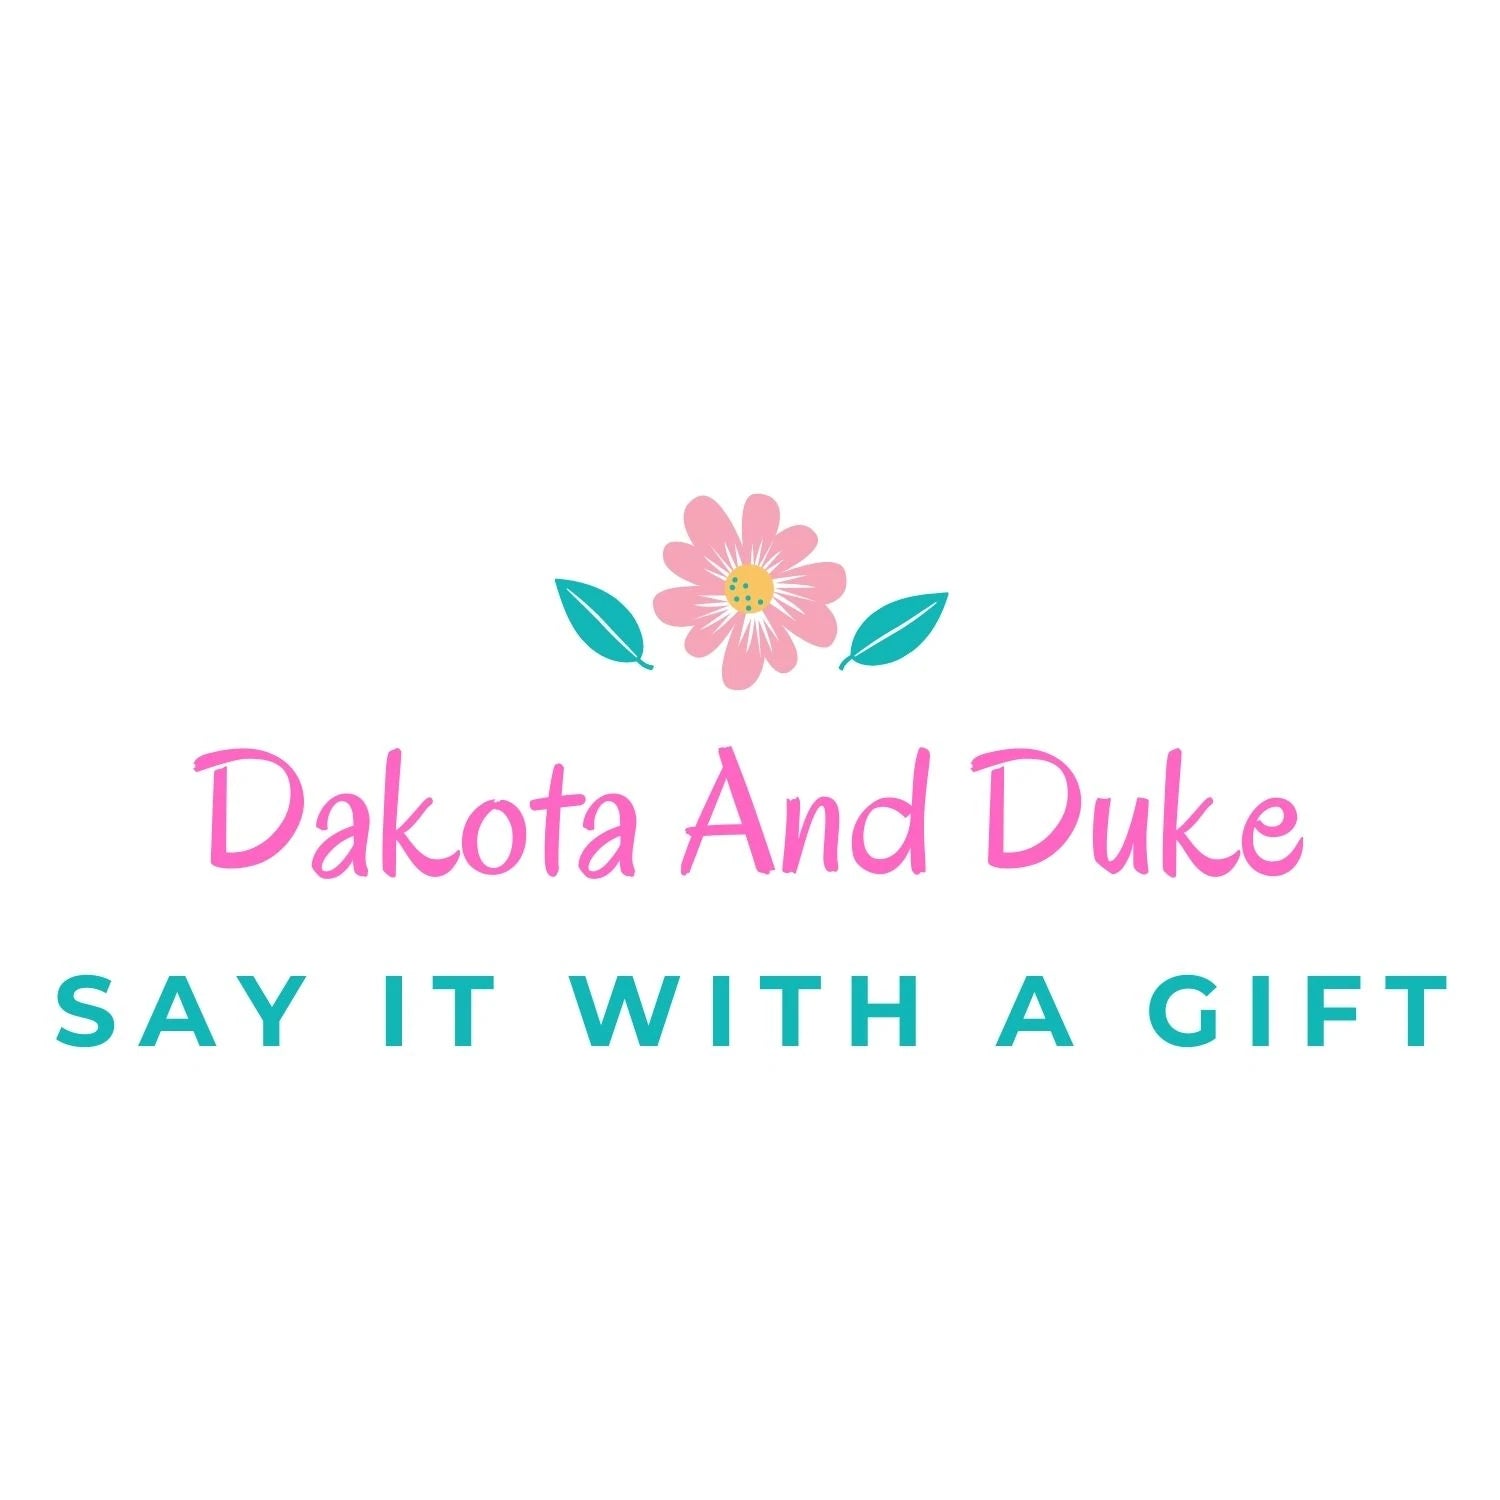 Dakota And Duke